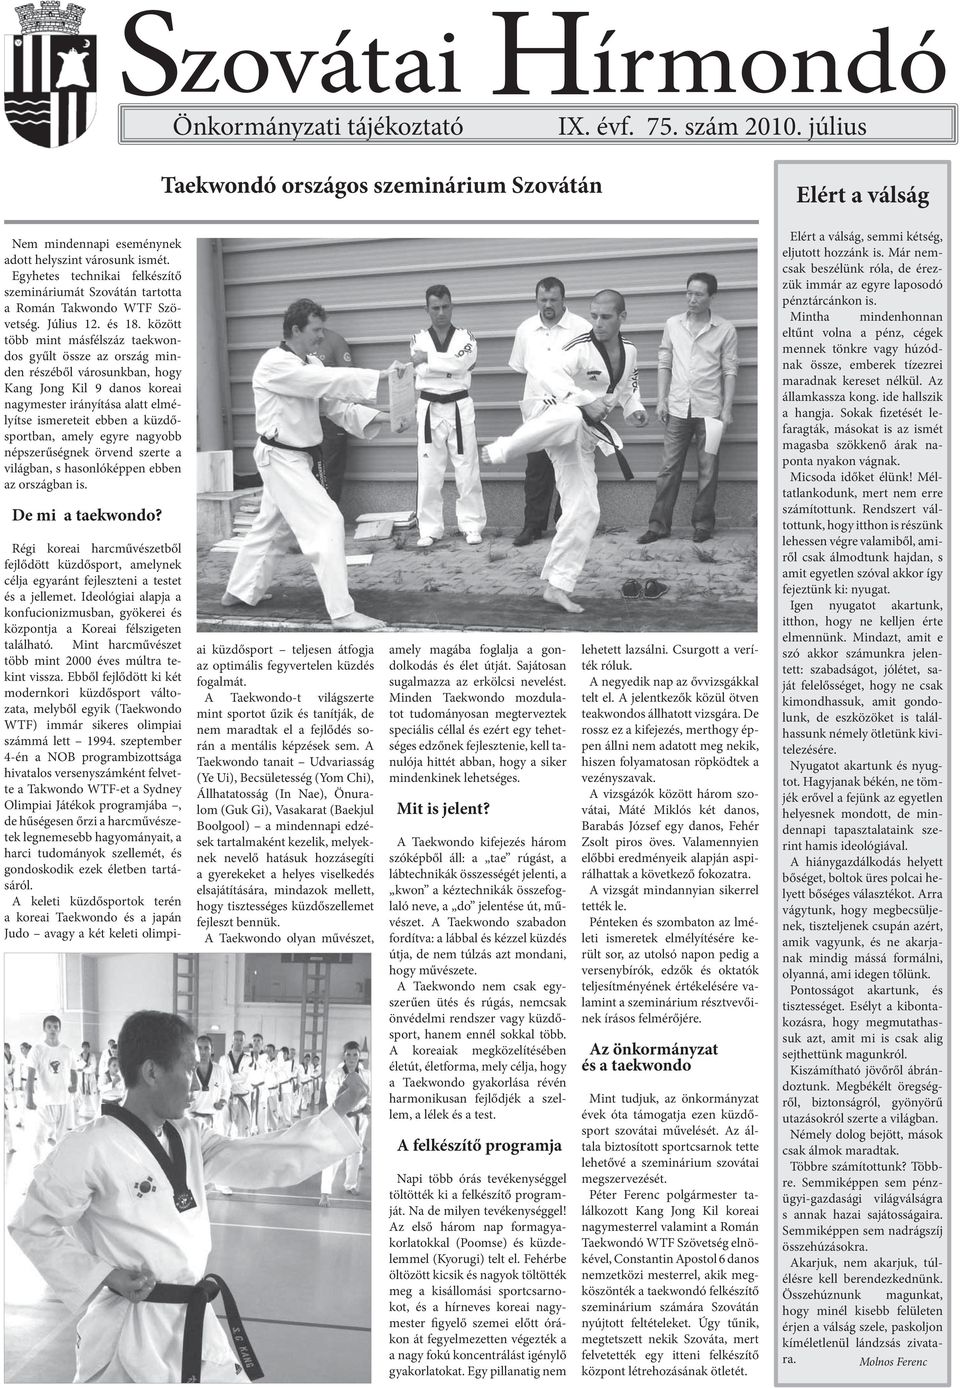 között több mint másfélszáz taekwondos gyűlt össze az ország minden részéből árosunkban, hogy Kang Jong Kil 9 danos koreai nagymester irányítása alatt elmélyítse ismereteit ebben a küzdősportban,